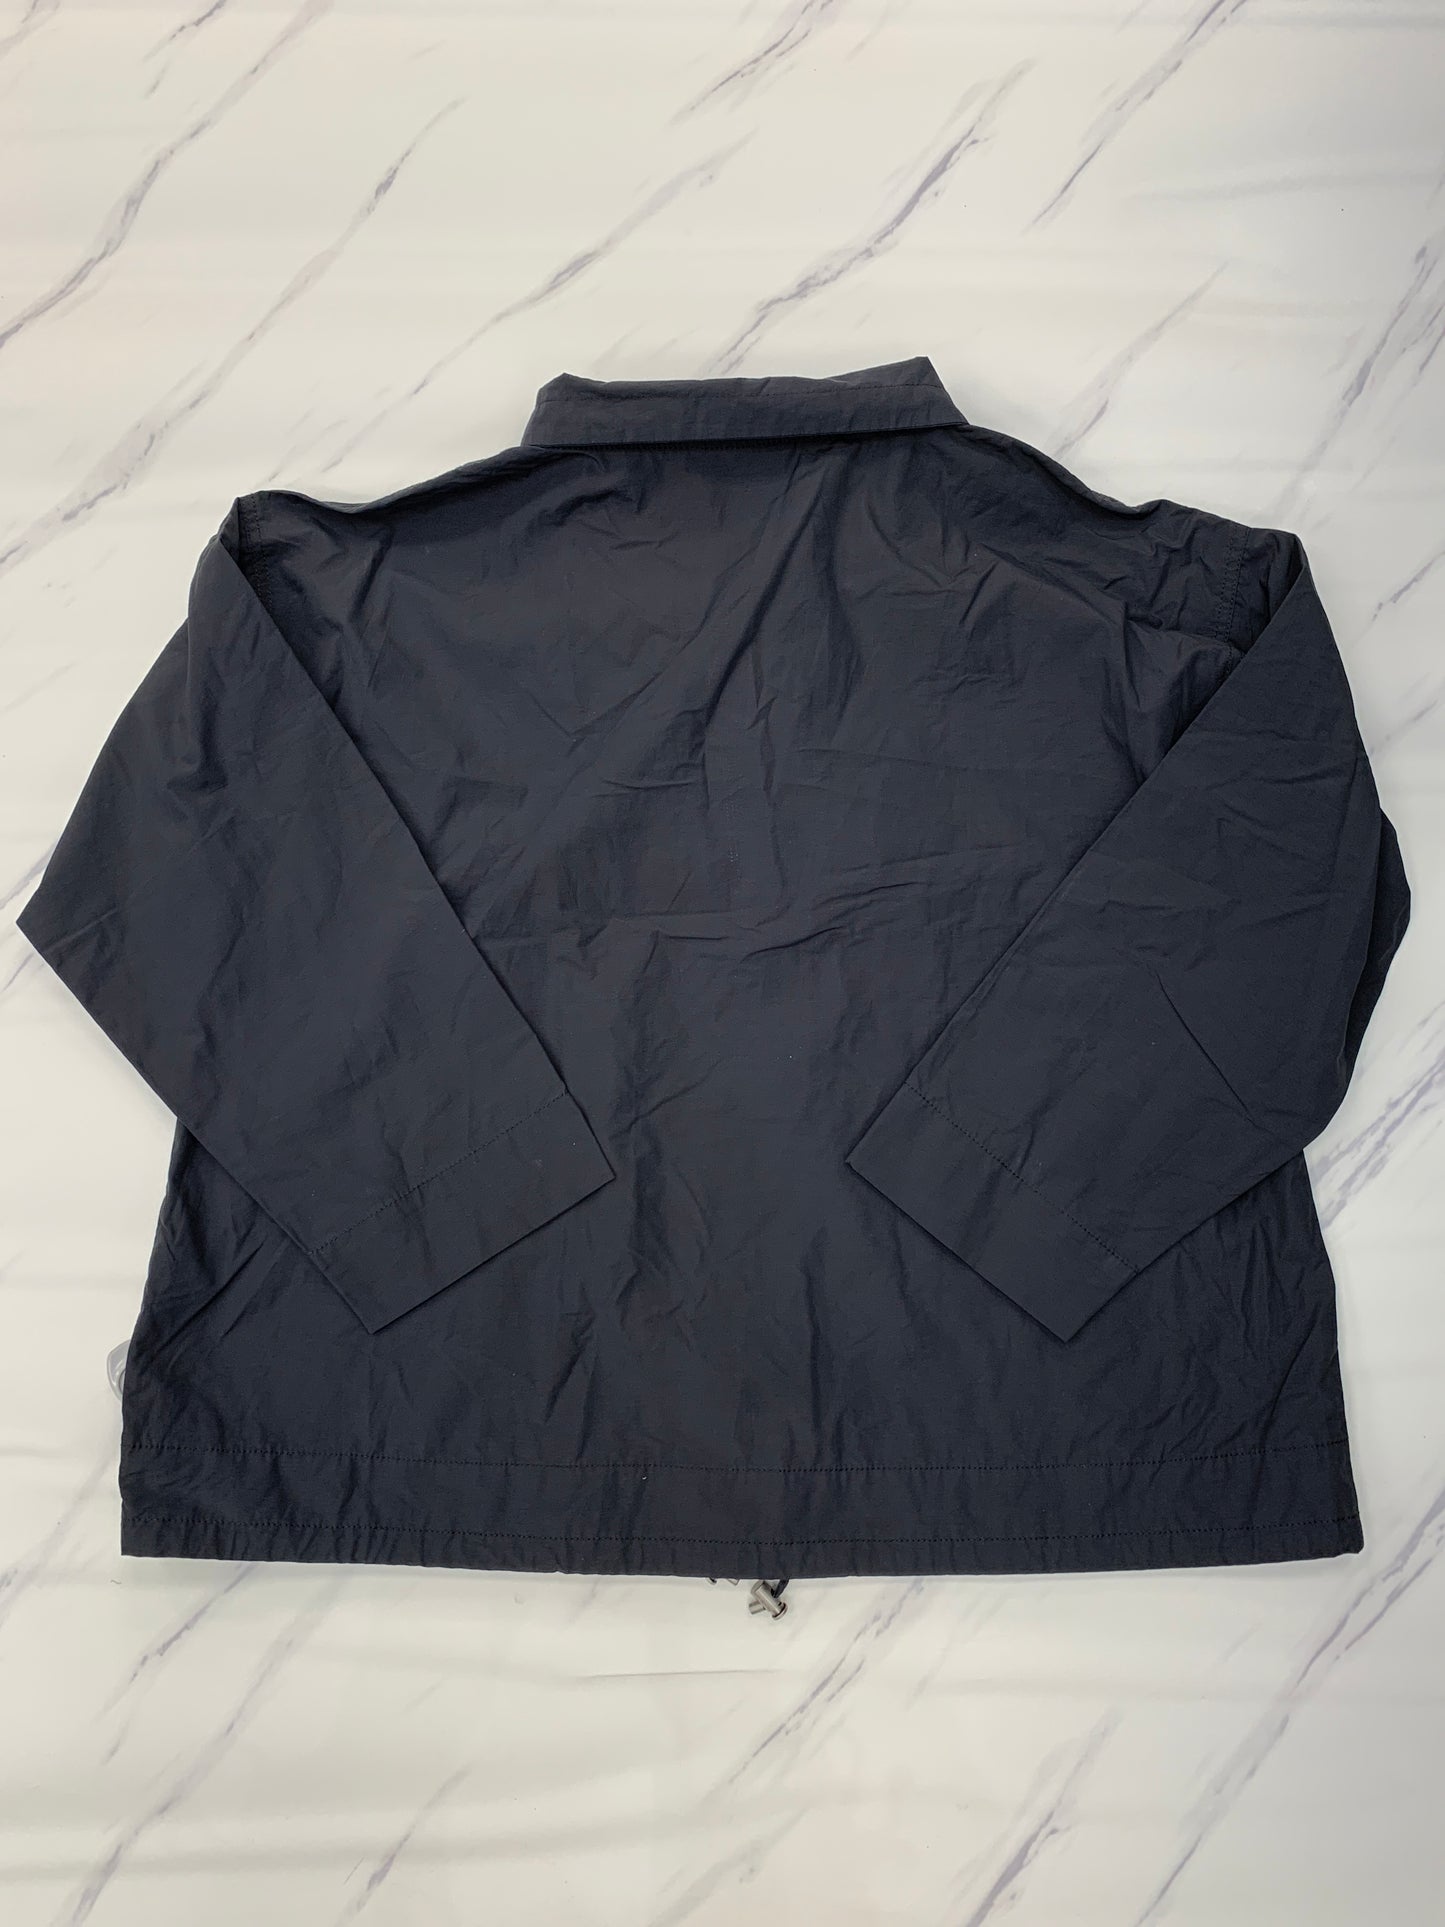 Jacket Utility By Eileen Fisher  Size: Xxl